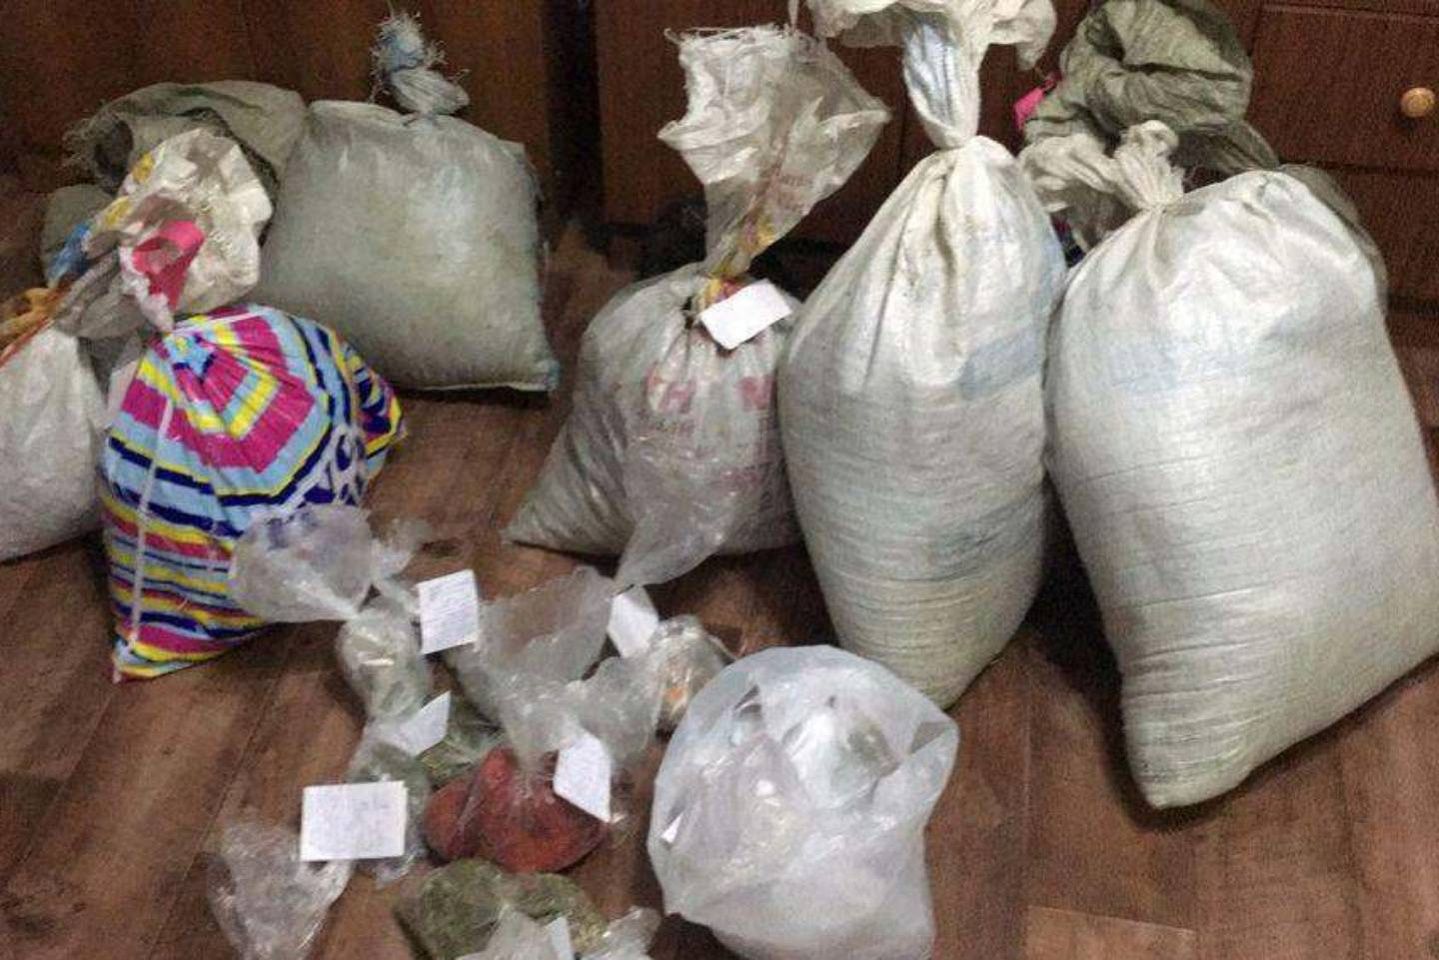 Происшествия в Казахстане и мире / Криминальные новости / Десятки мешков с марихуаной хранил у себя дома житель Алматинской области